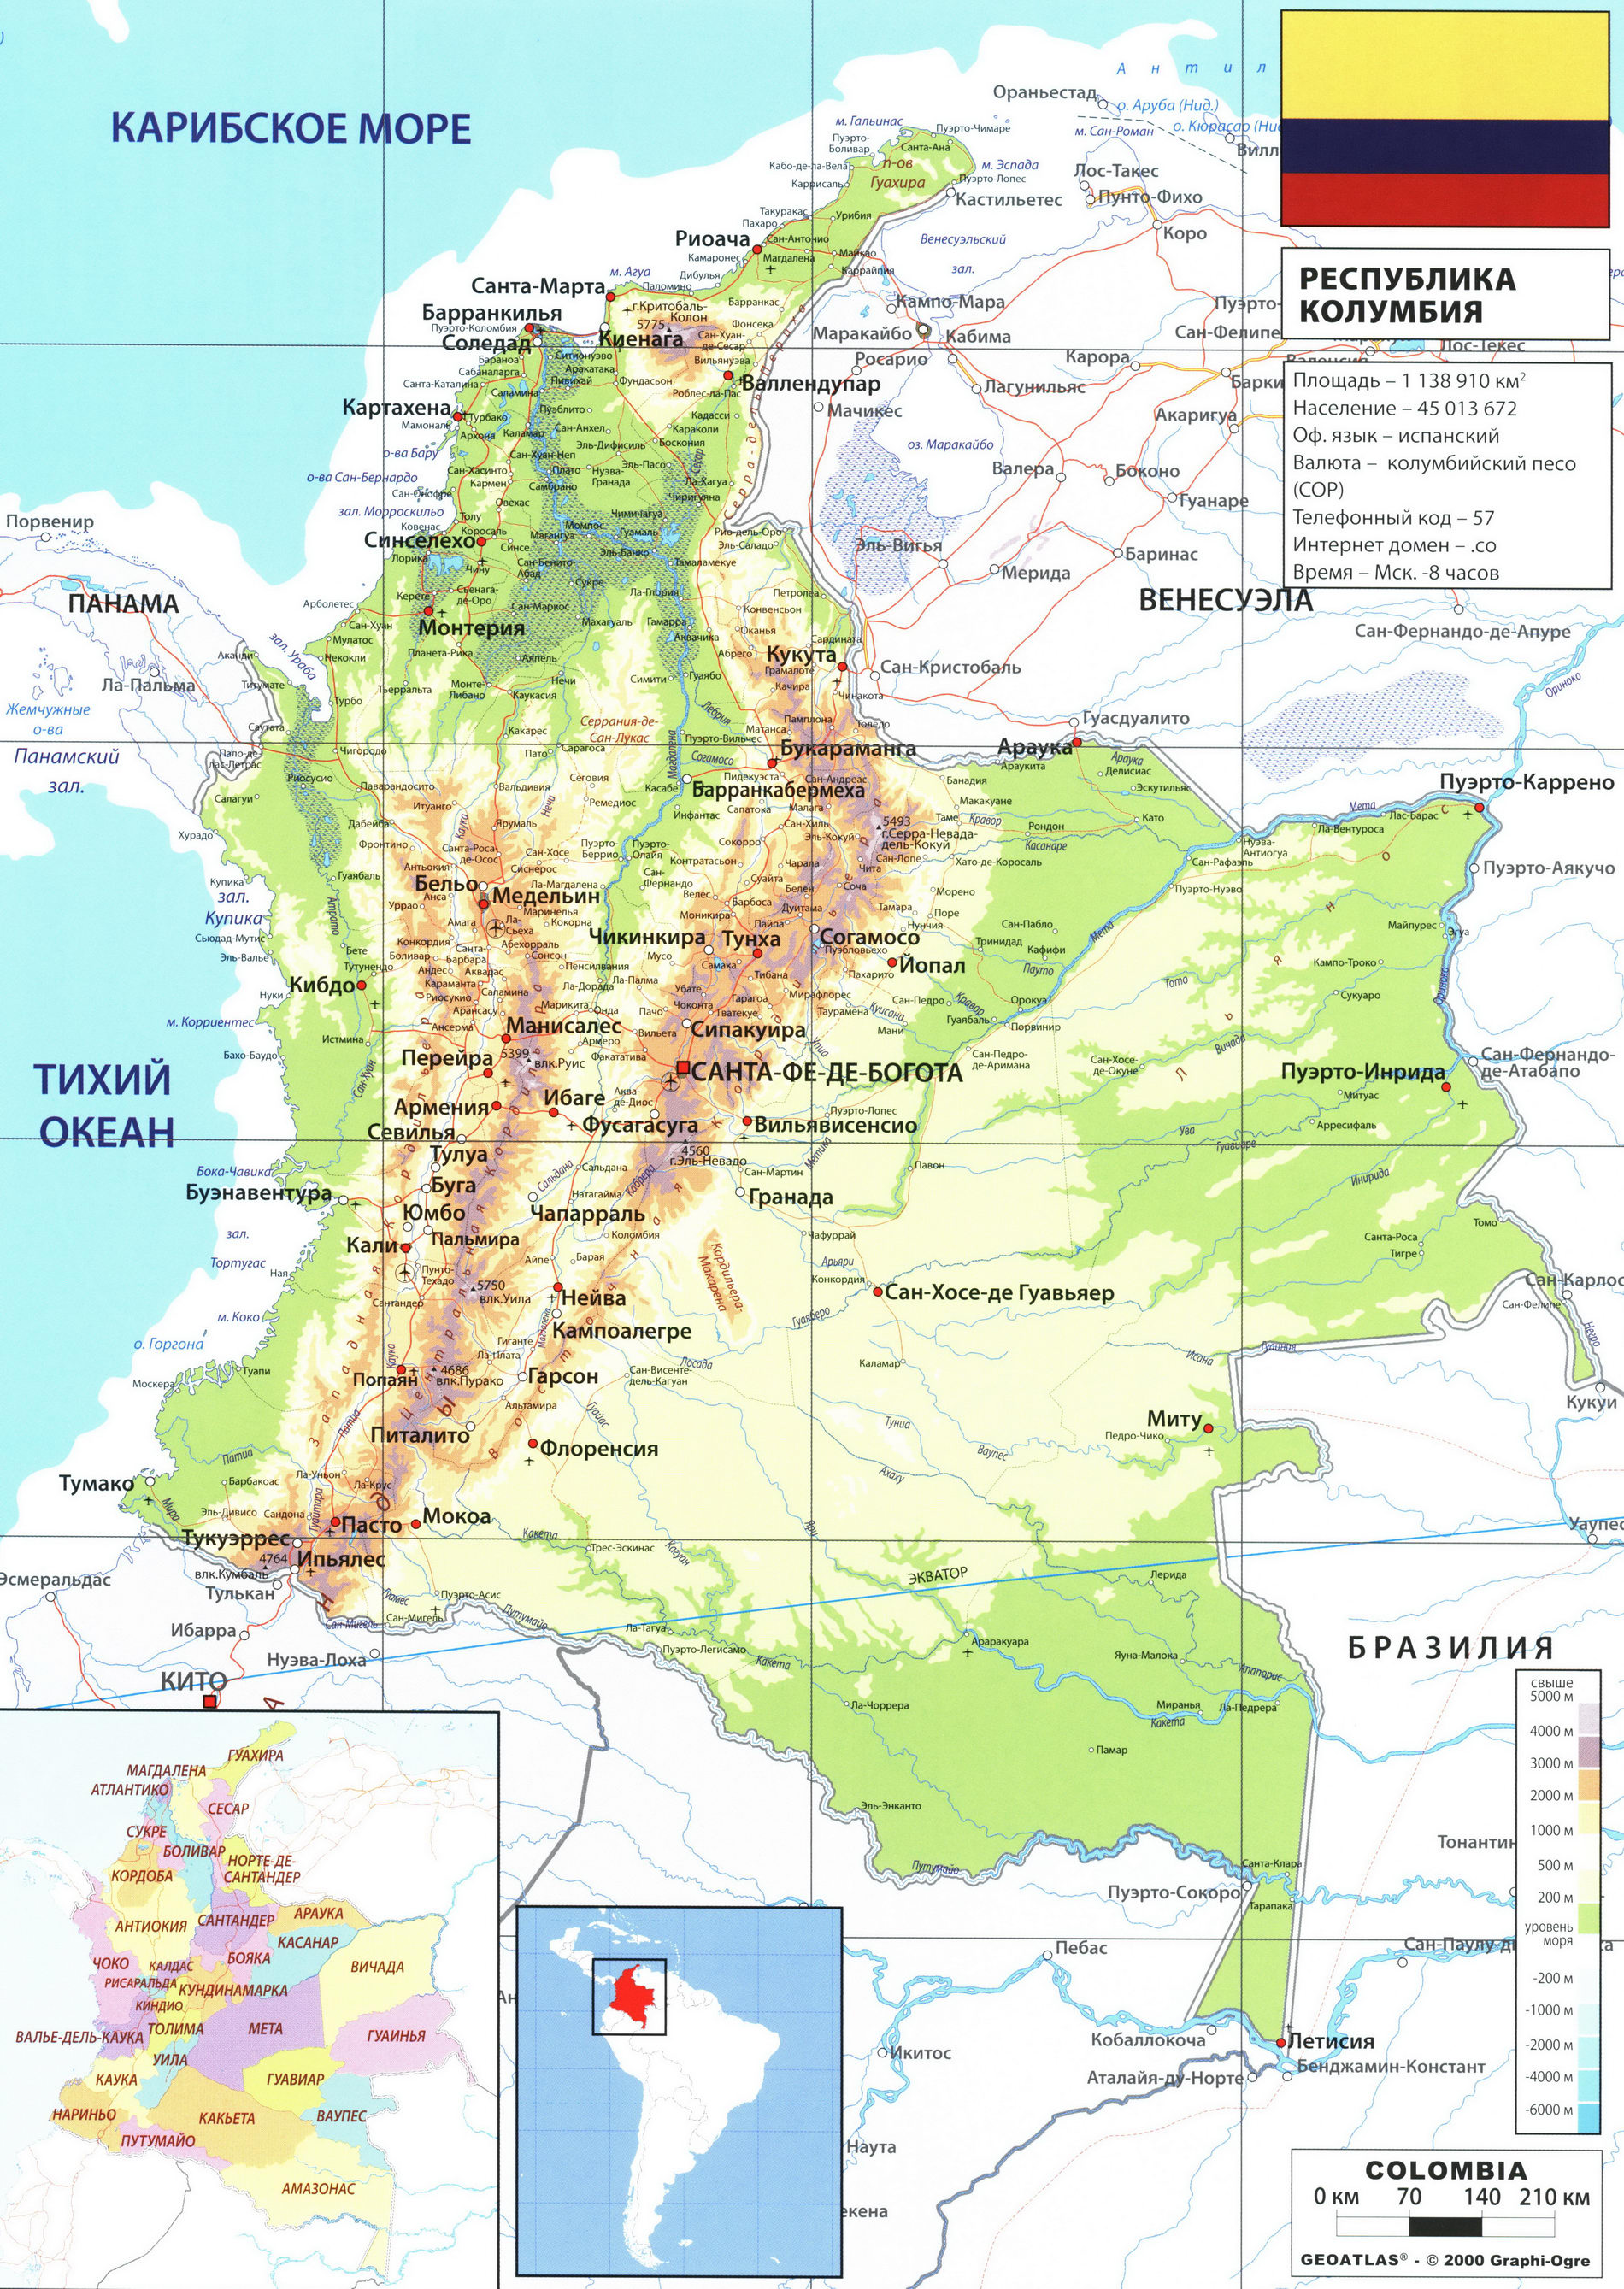 Колумбия карта на русском языке, описание страны, география - Атлас мира